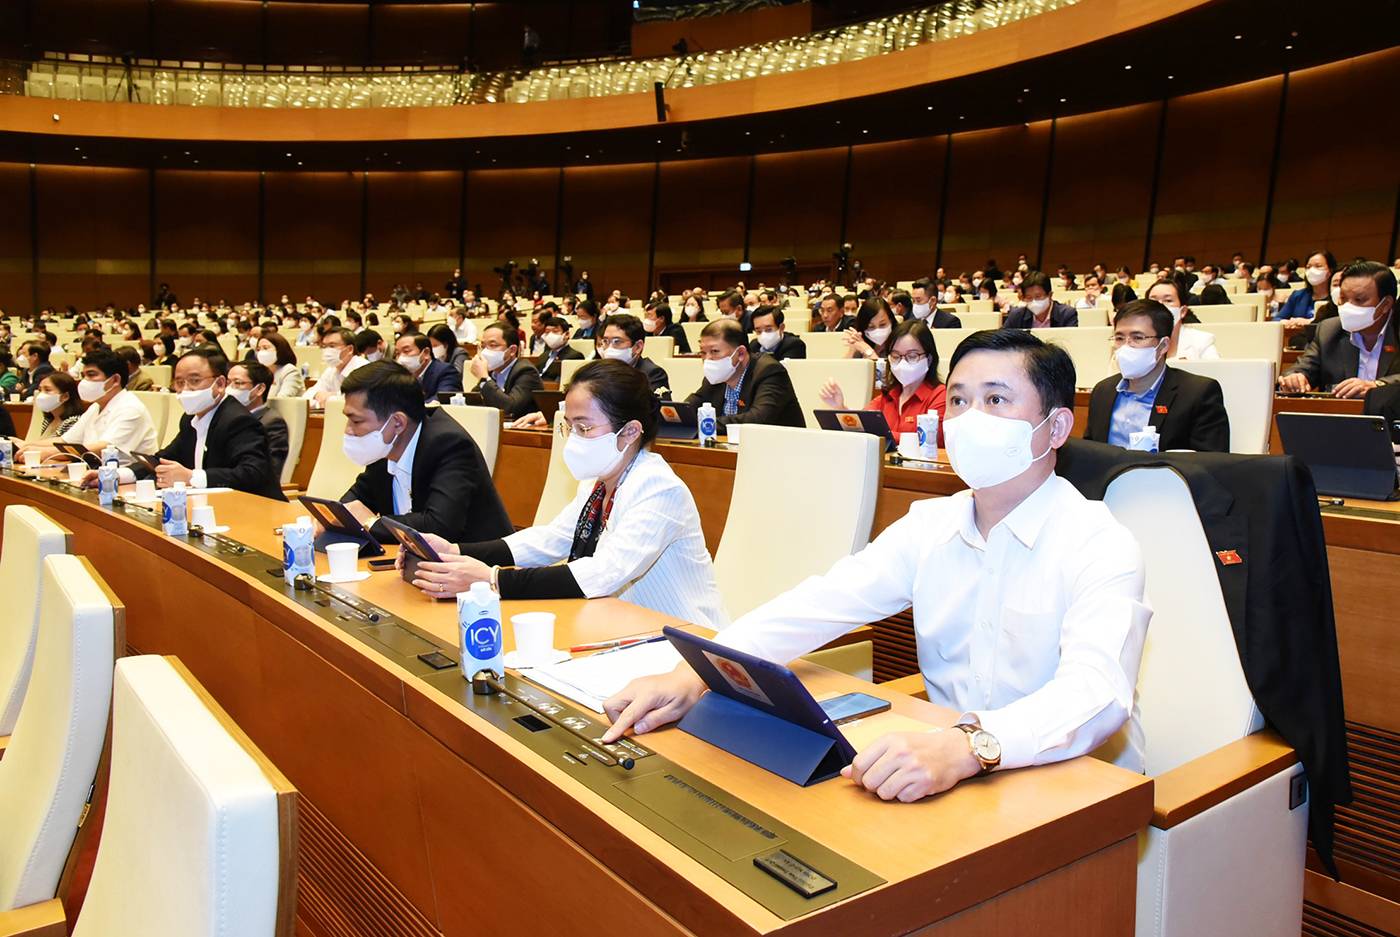 Các đại biểu Quốc hội đoàn Nghệ An bấm nút thông qua dự thảo nghị quyết chiều 12/11/2021 tại Kỳ họp thứ 2, Quốc hội khóa XV. Ảnh: Quang Khánh